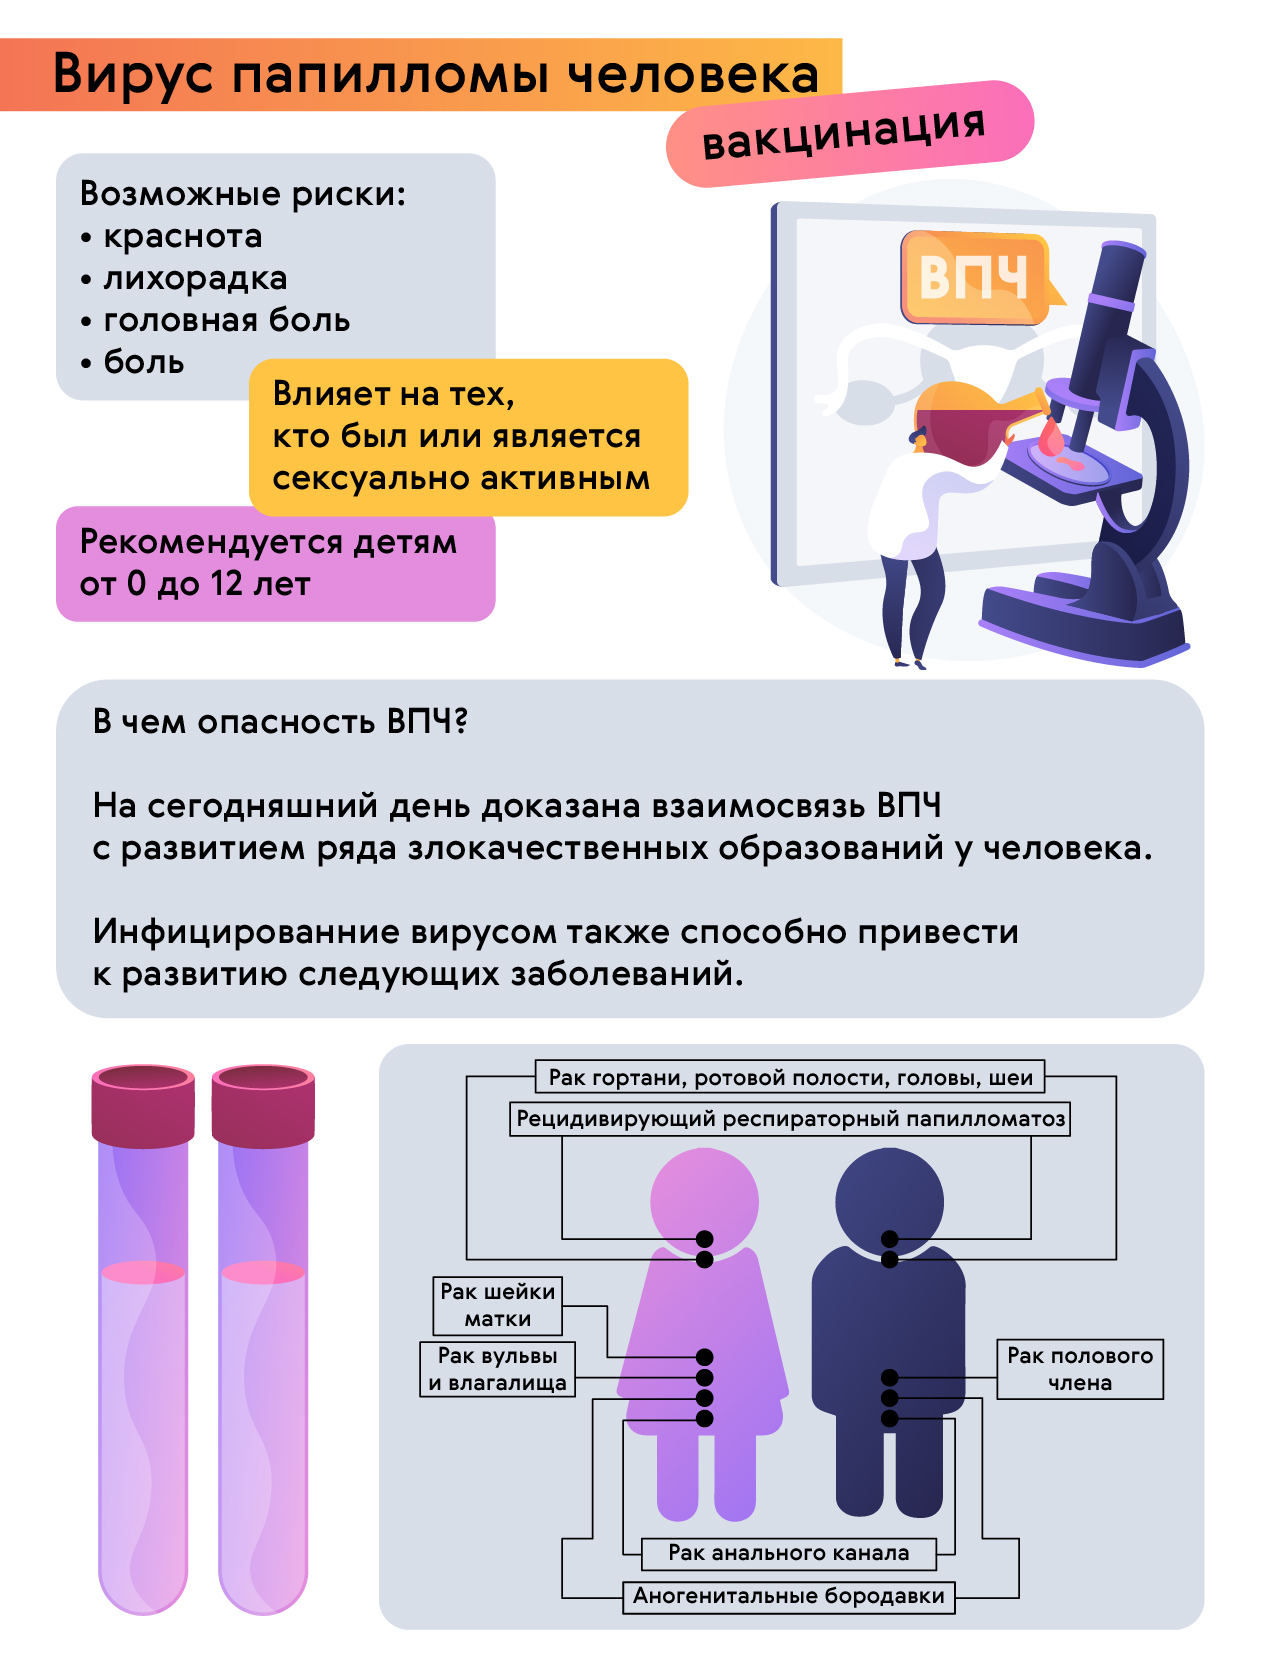 hpv vakcina pris)